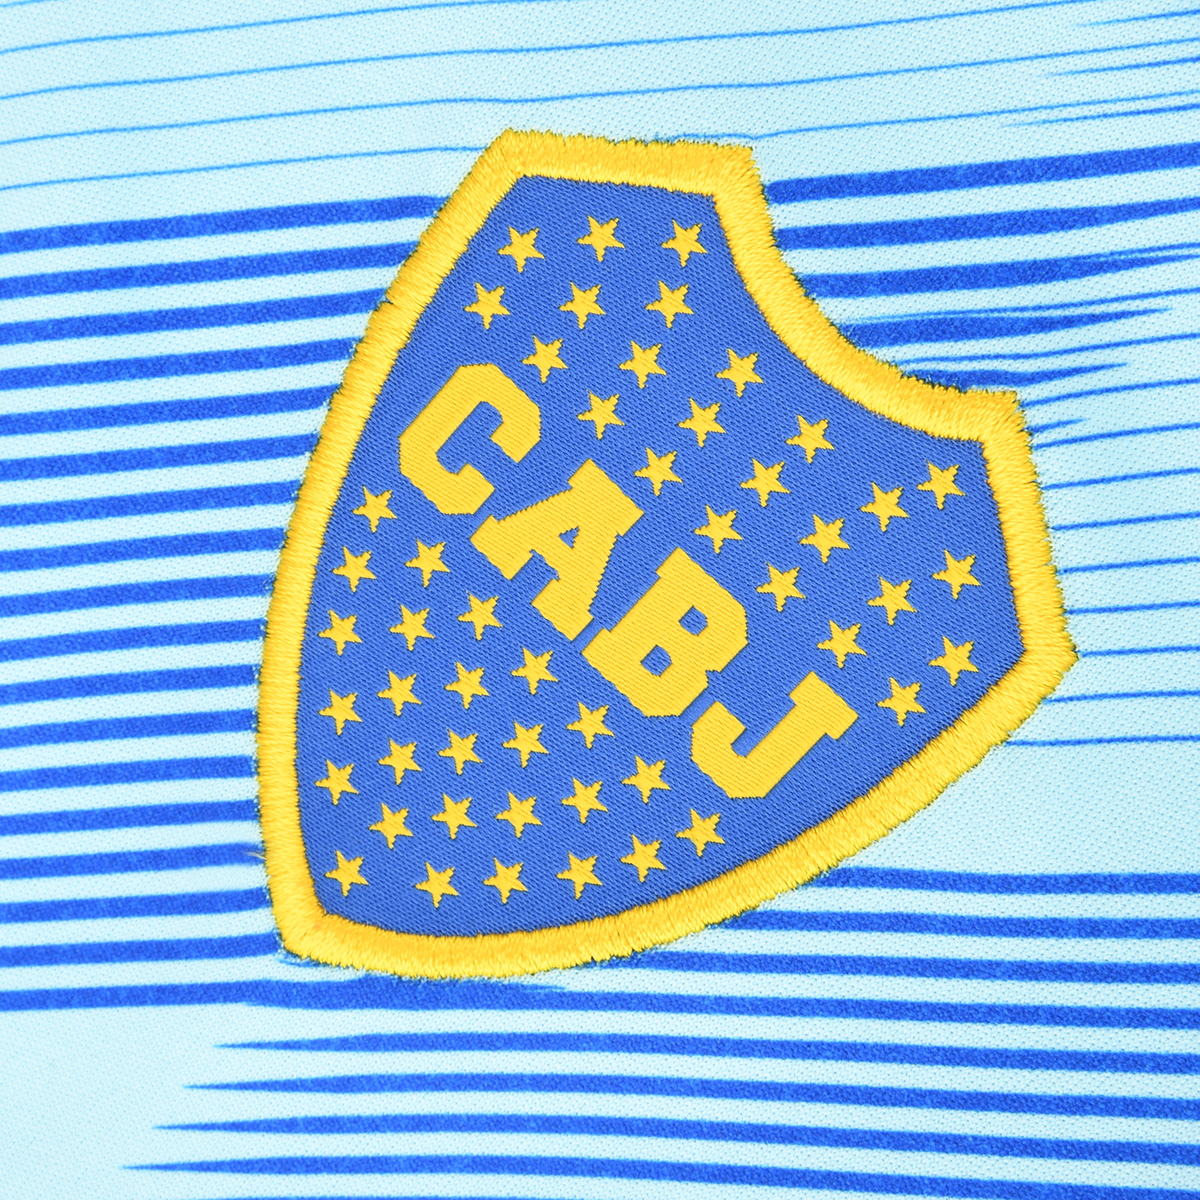 Camiseta adidas Boca Juniors Alternativa 23/24 para Niños,  image number null